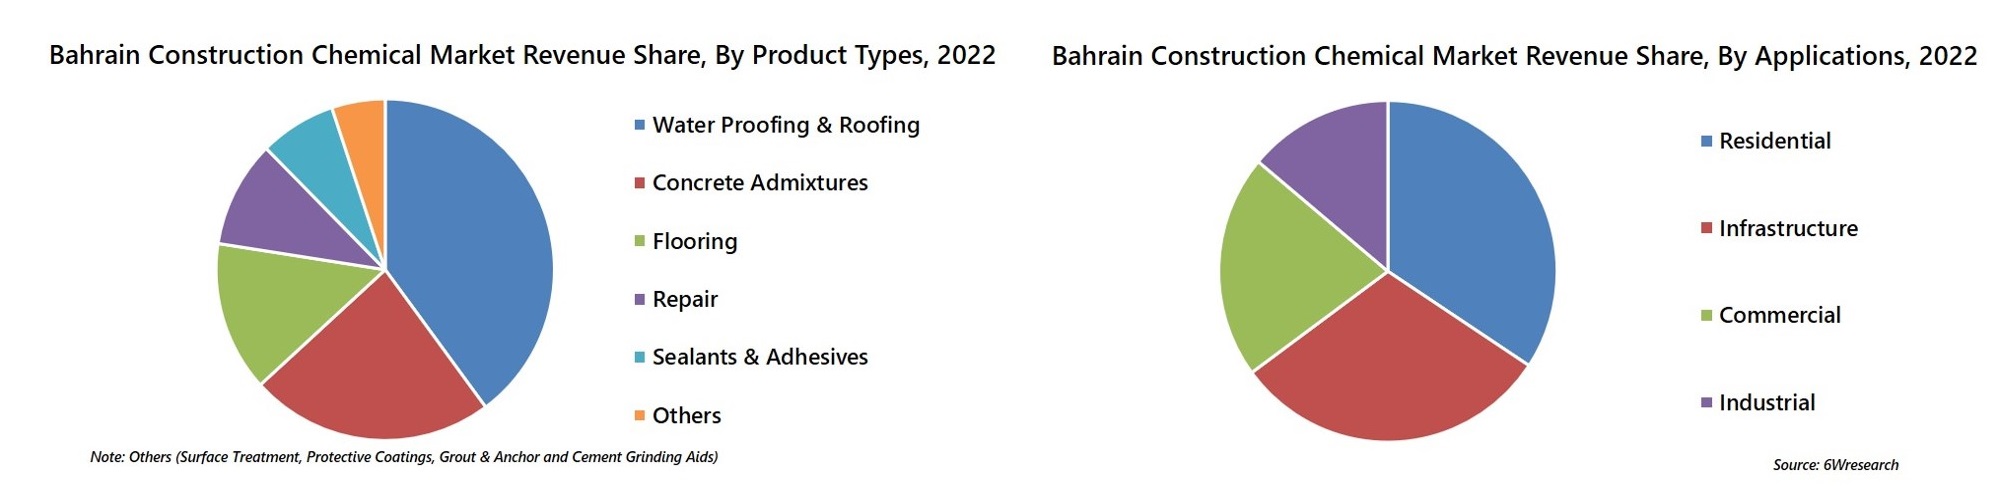 Bahrain Construction Chemical Market